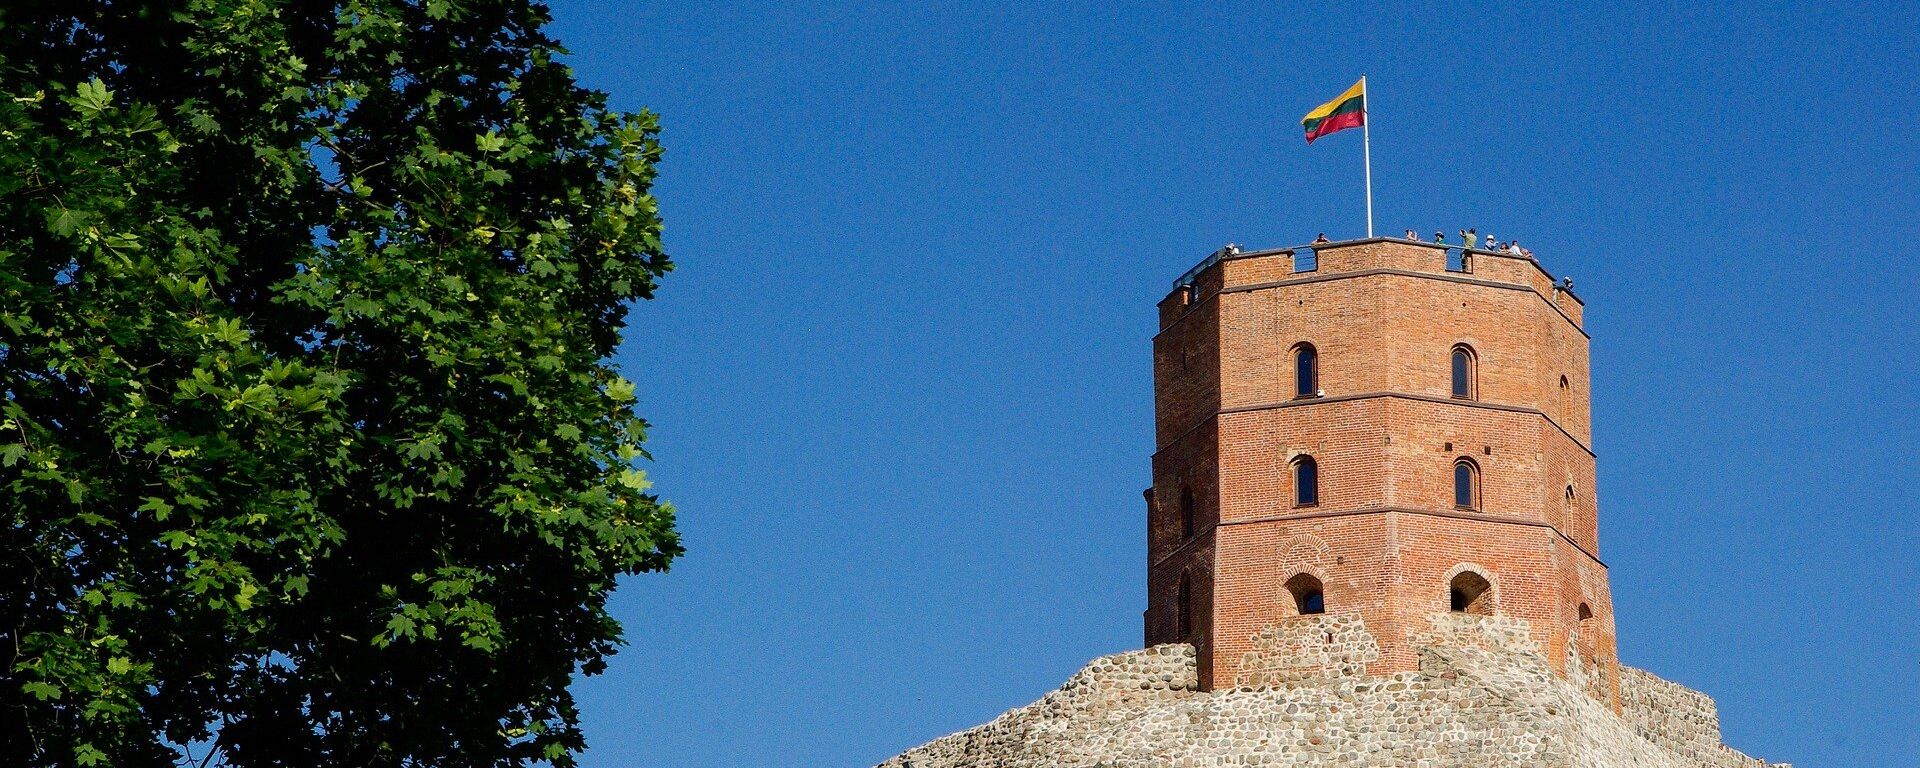 Гора Гедиминаса с башней Гедиминаса и флагом Литвы - Sputnik Lietuva, 1920, 28.06.2021